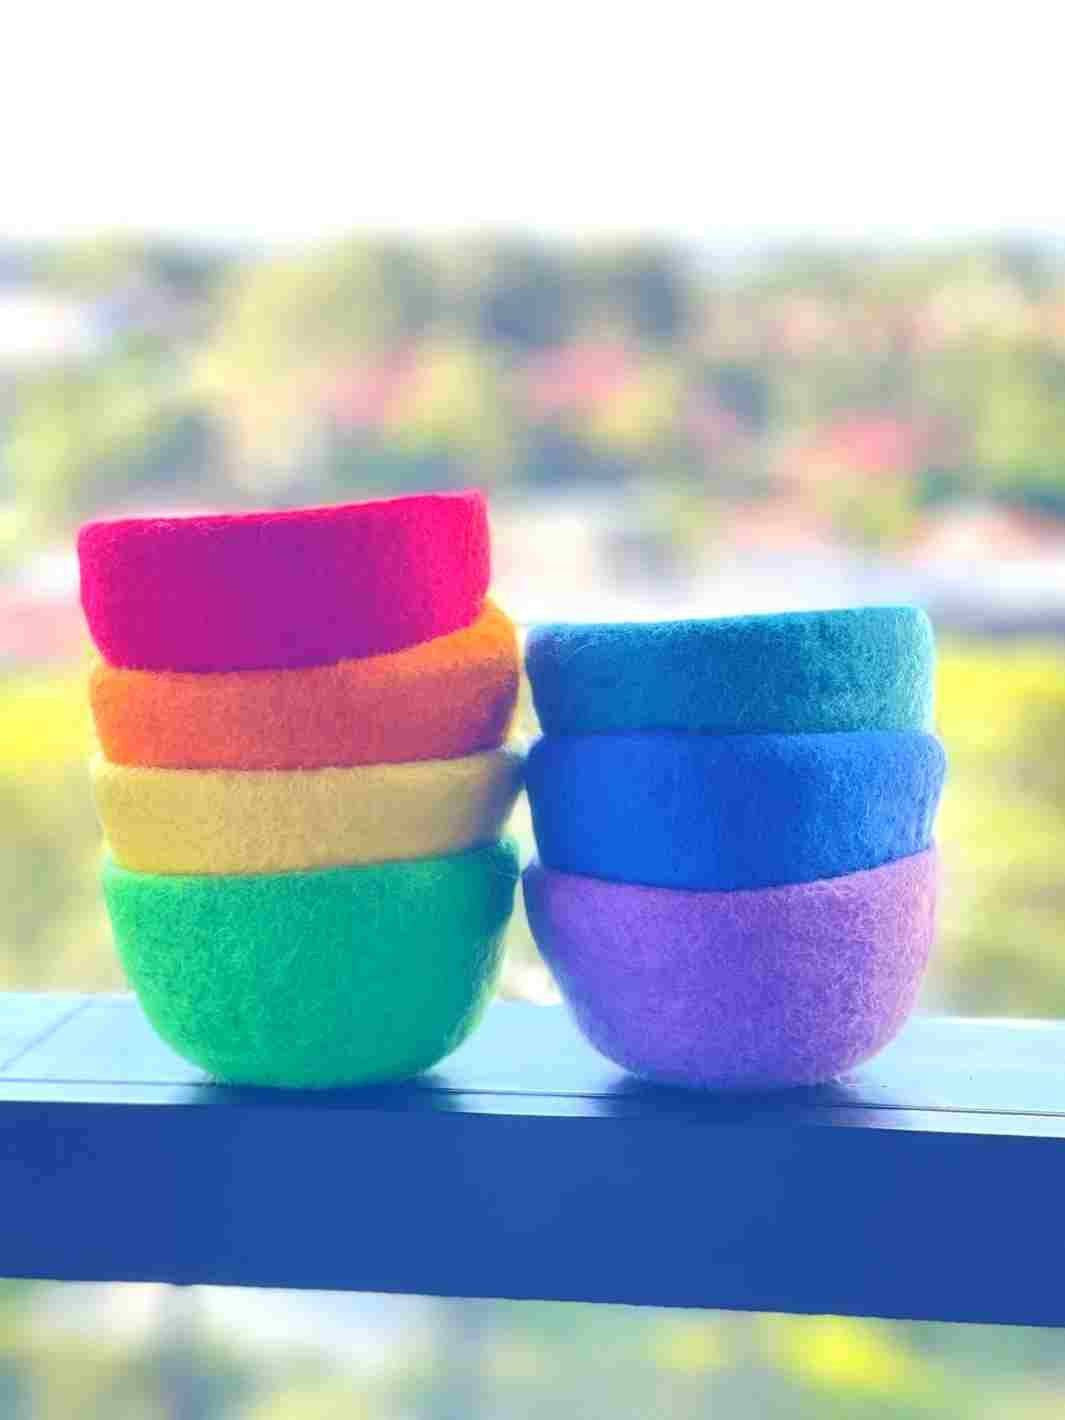 Educational Kid Toys | Felt Stacking Bowls - Set of 7 (Rainbow) | Felt Bowls | Rainbow 🌈 Colours |🌈 | Eco Dog & Cat 